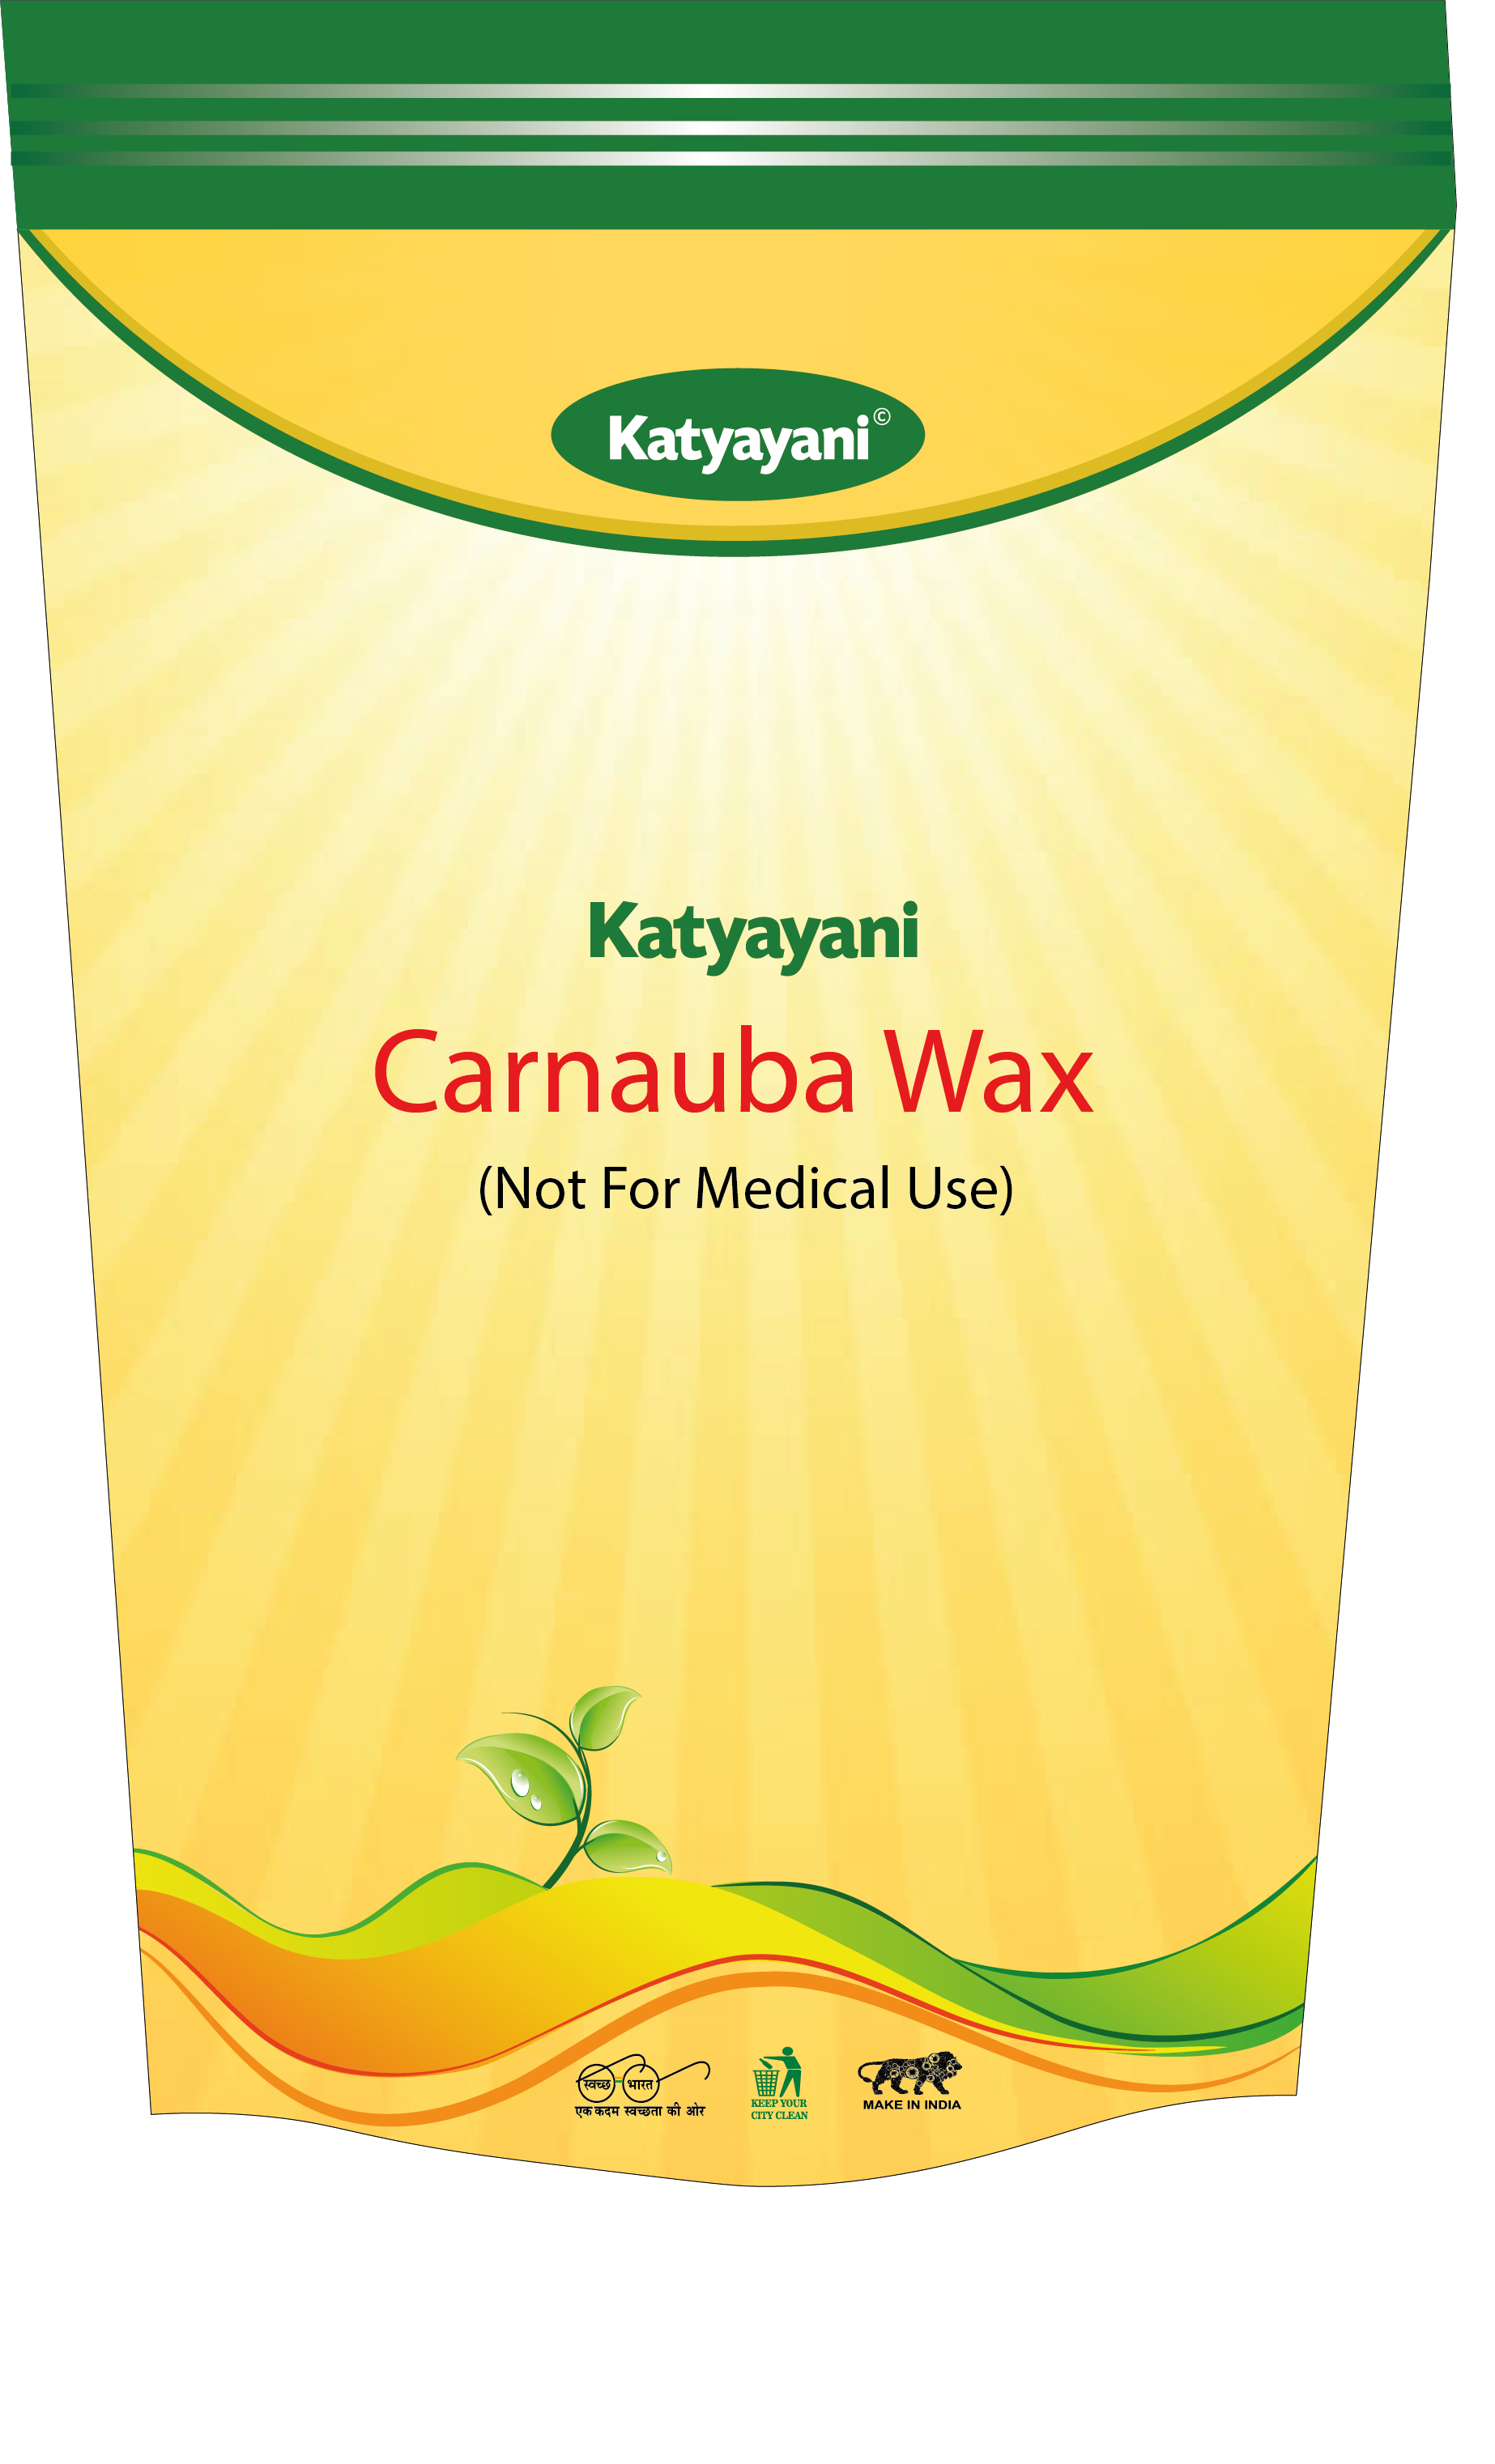 What is Carnauba Wax?